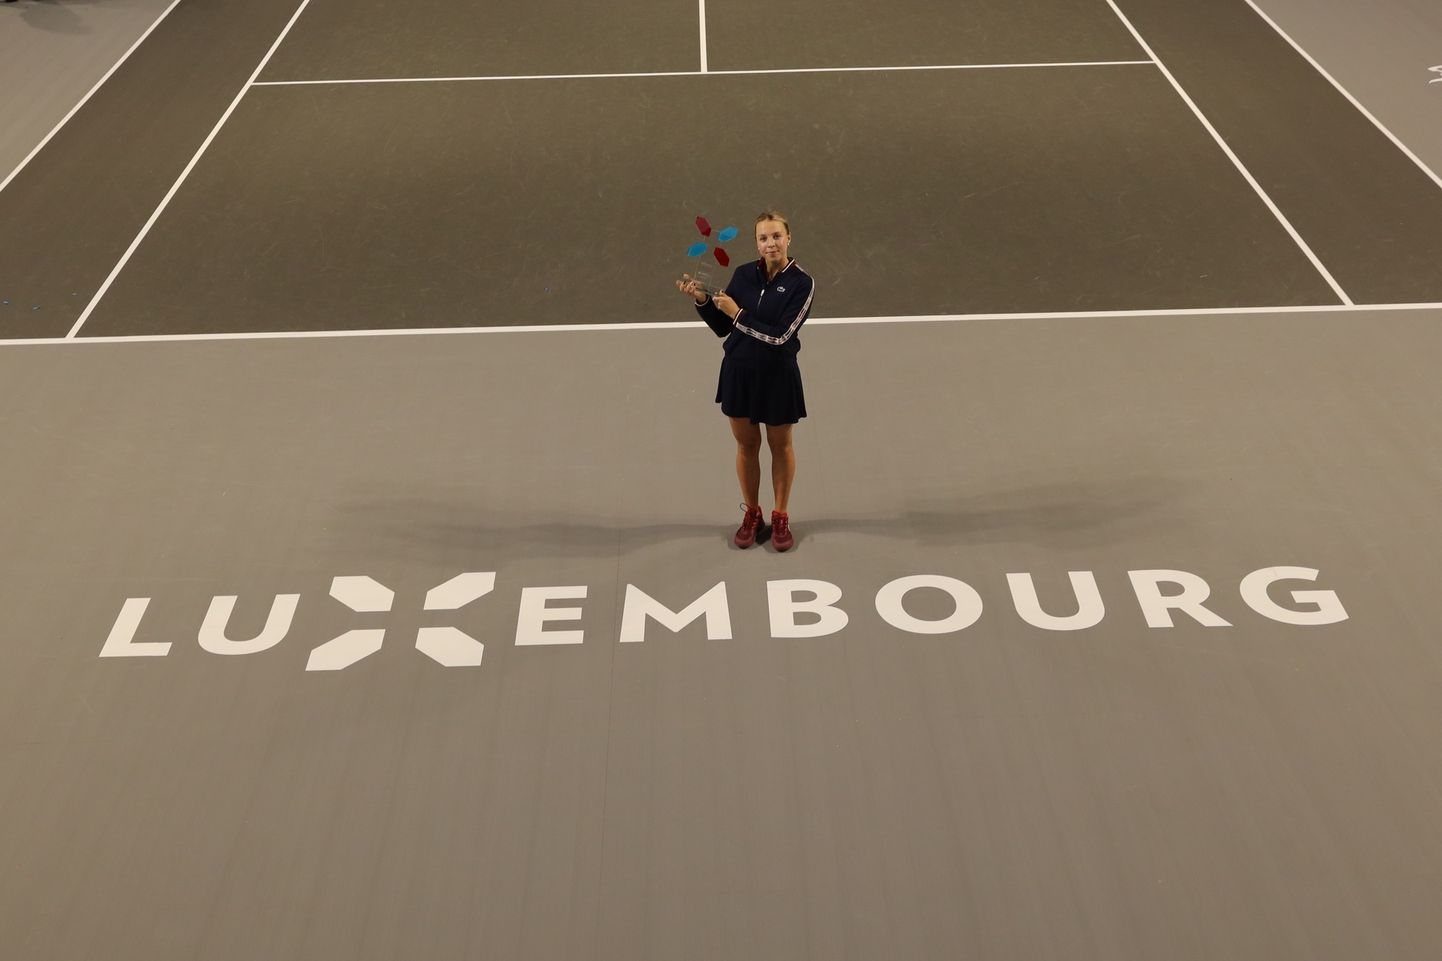 Anett Kontaveit Ladies Tennis Mastersi turniiri võidukarikaga. Tuleval aastal saab ta seda tiitlit kaitsma asuda.